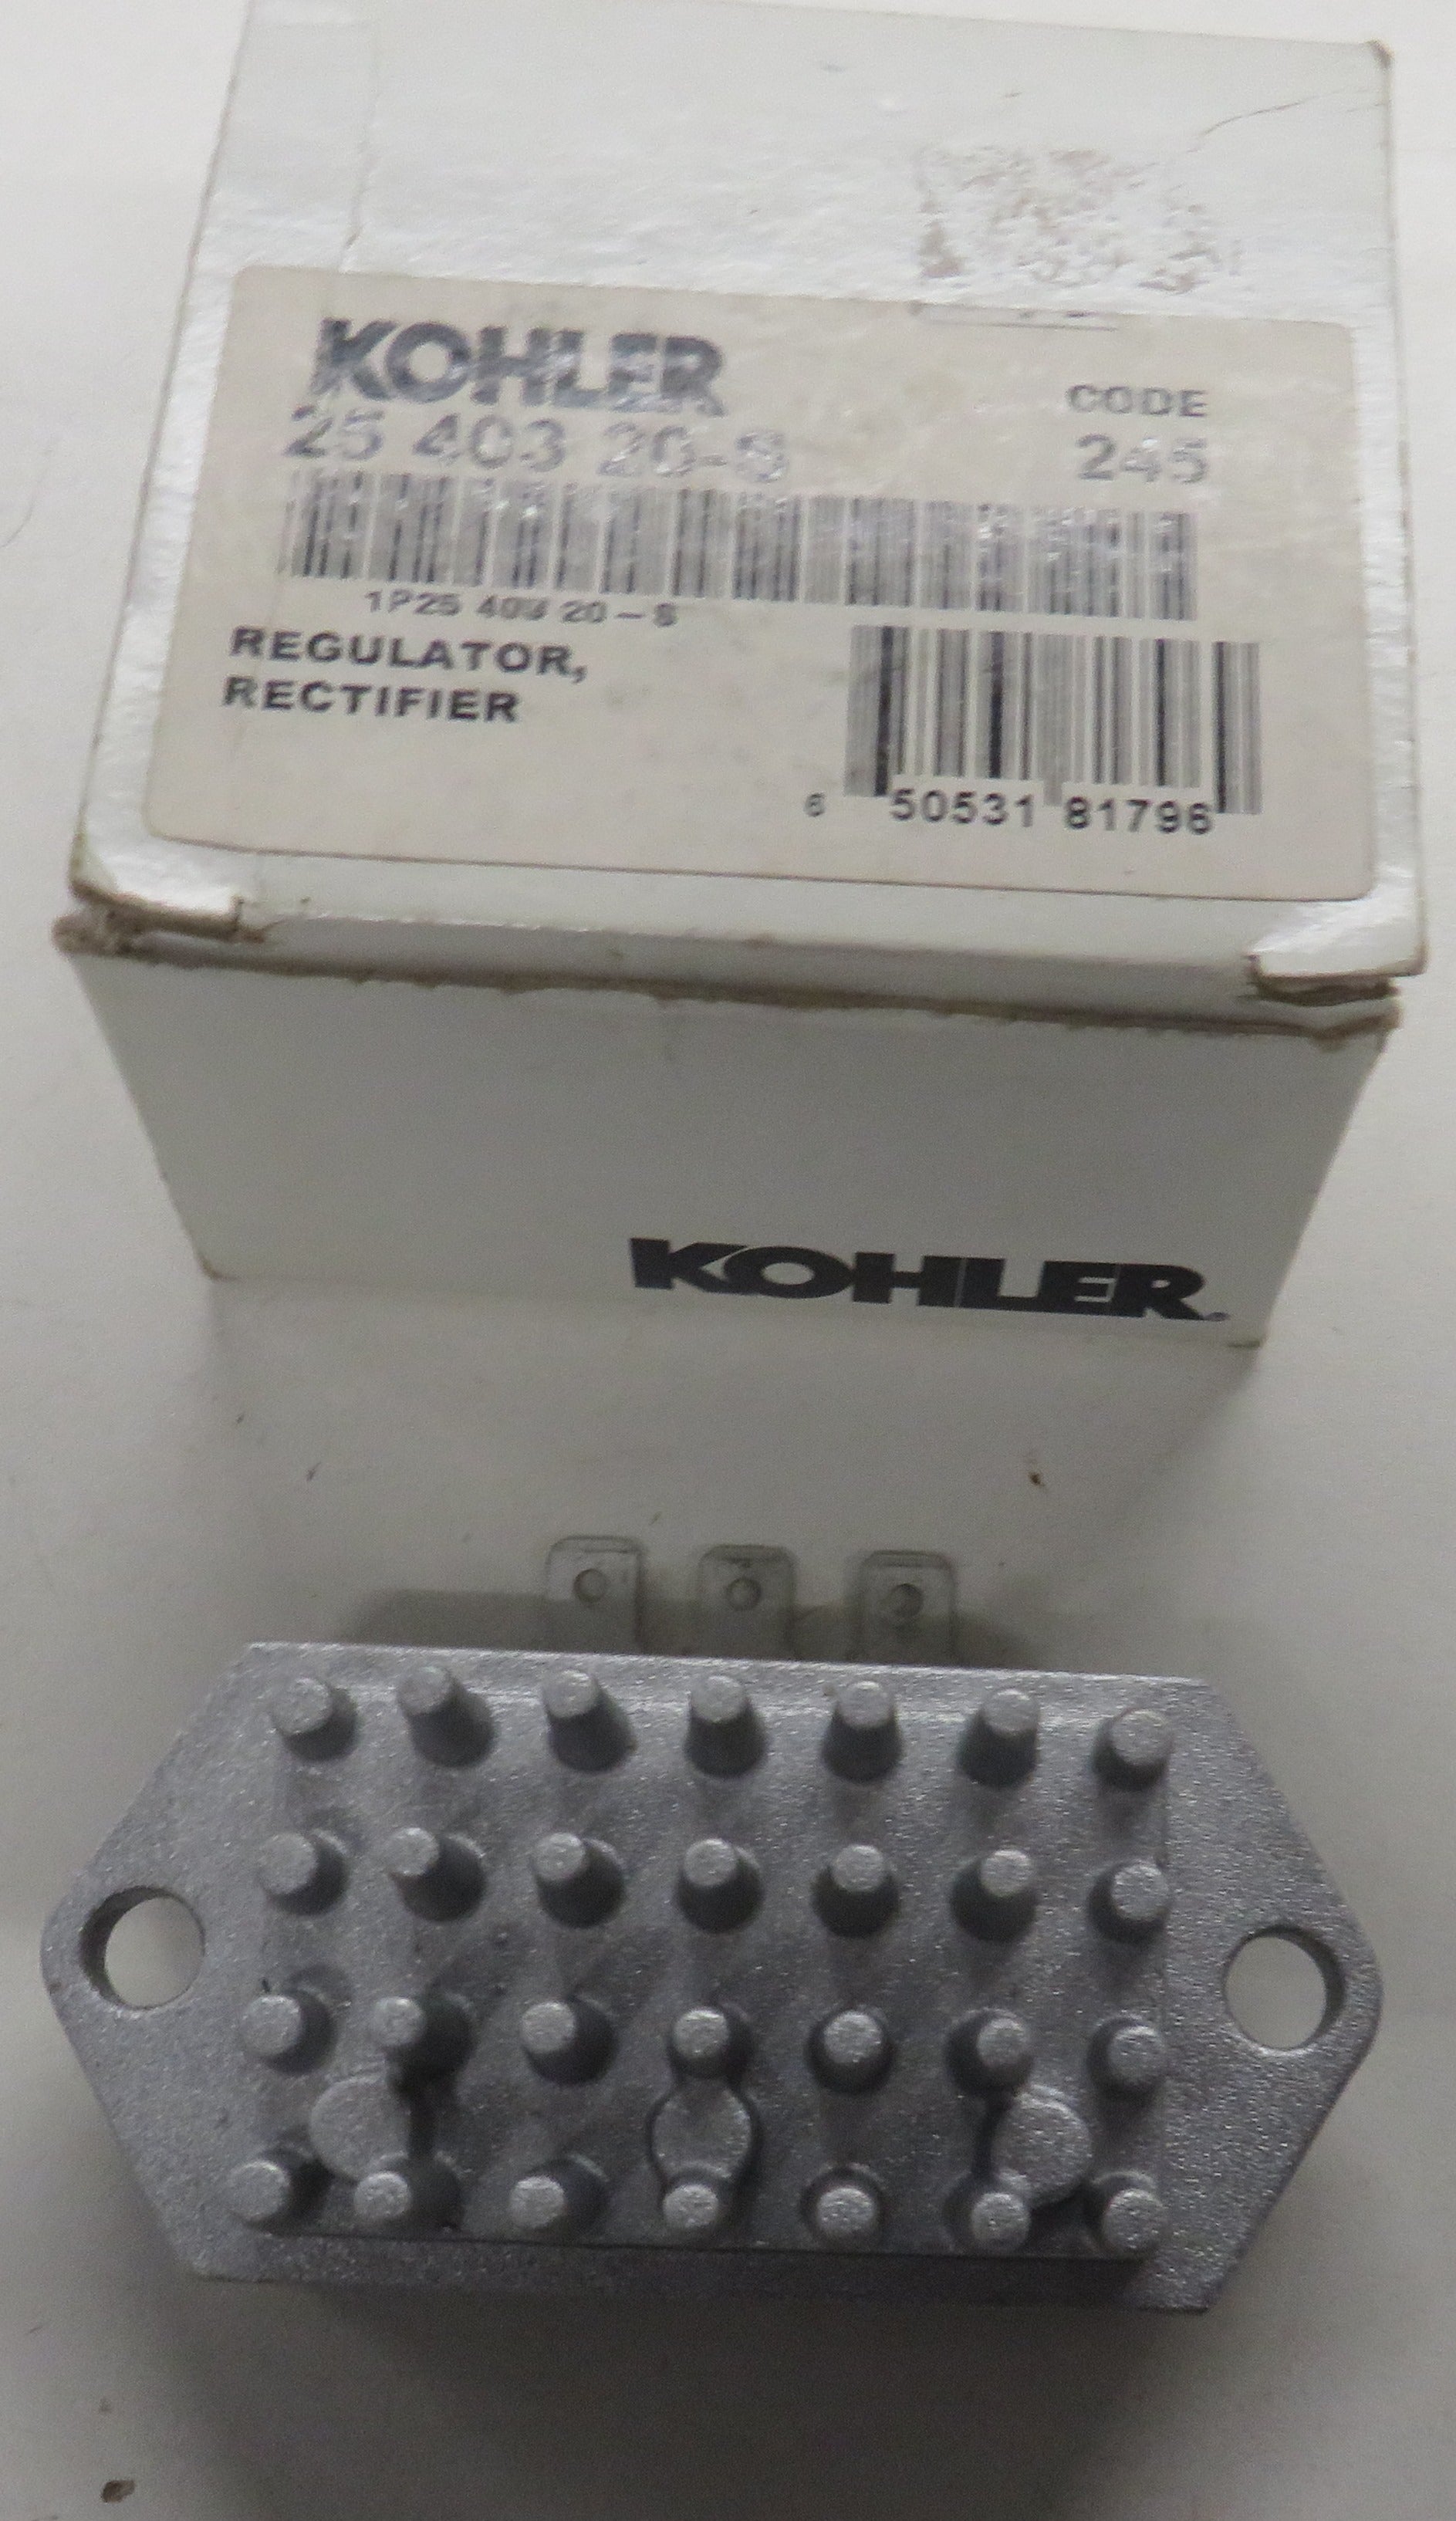 Kohler 25 403 20-S Regulator Rectifier